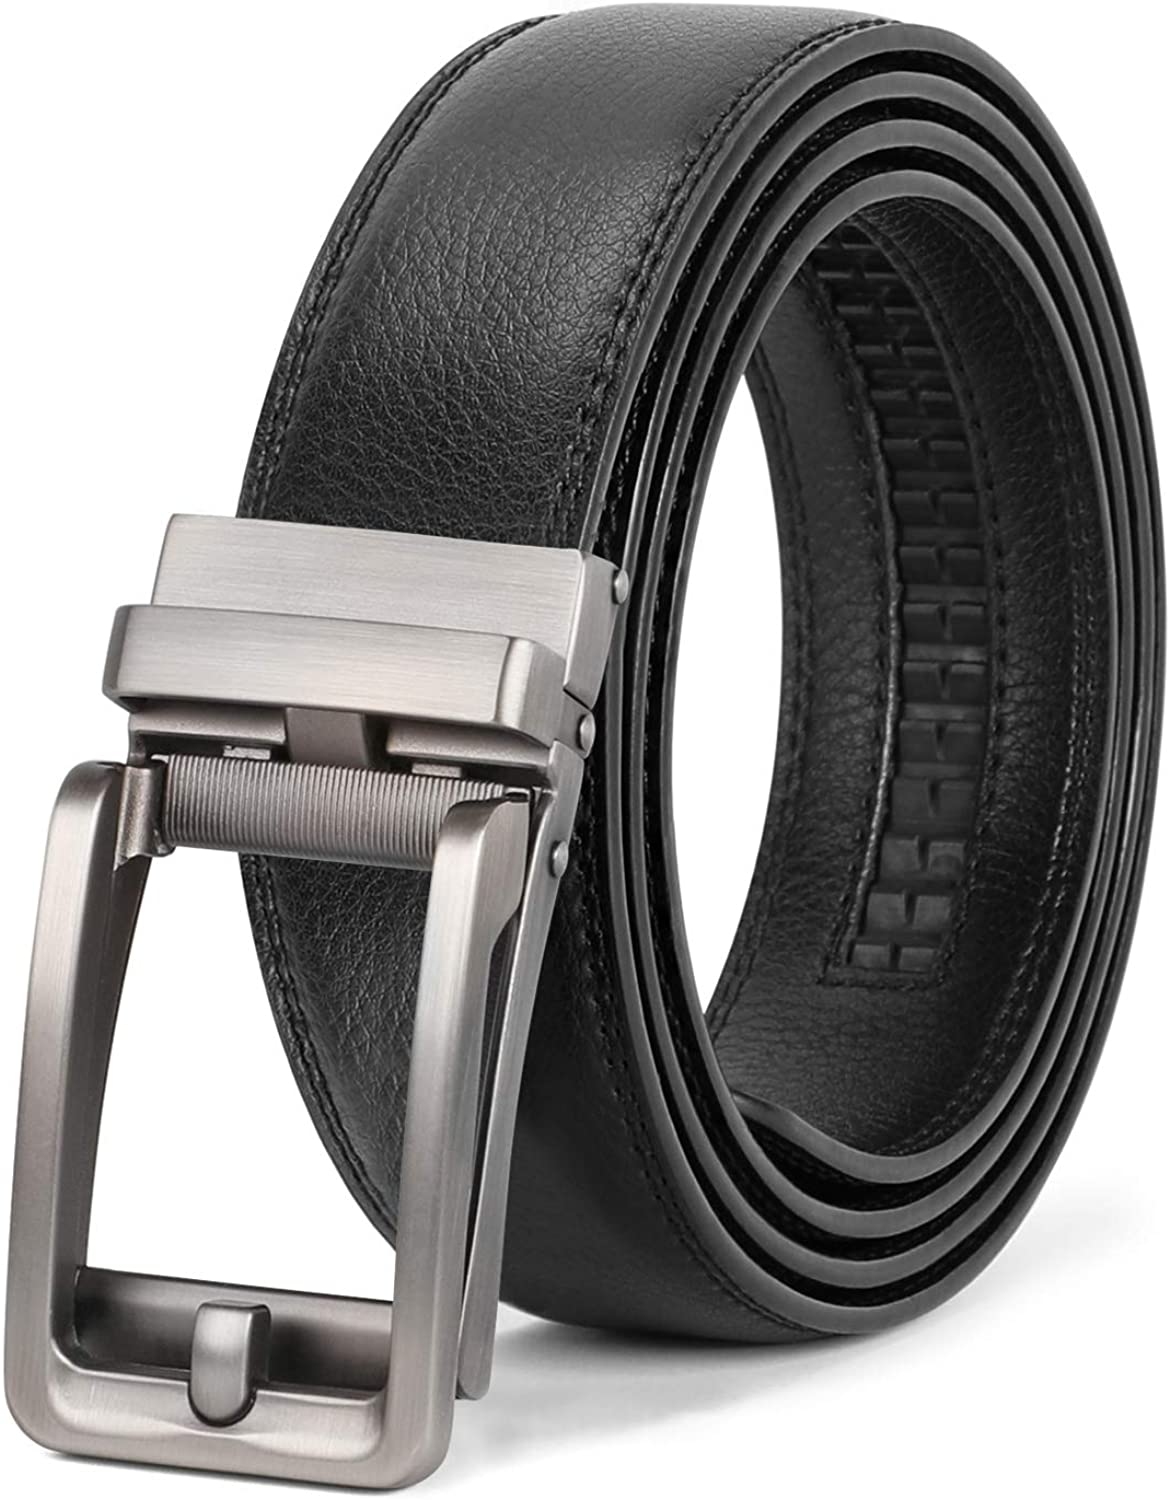 Men's Ratchet Leather Belt for Dress, Sliding Automatic Buckle